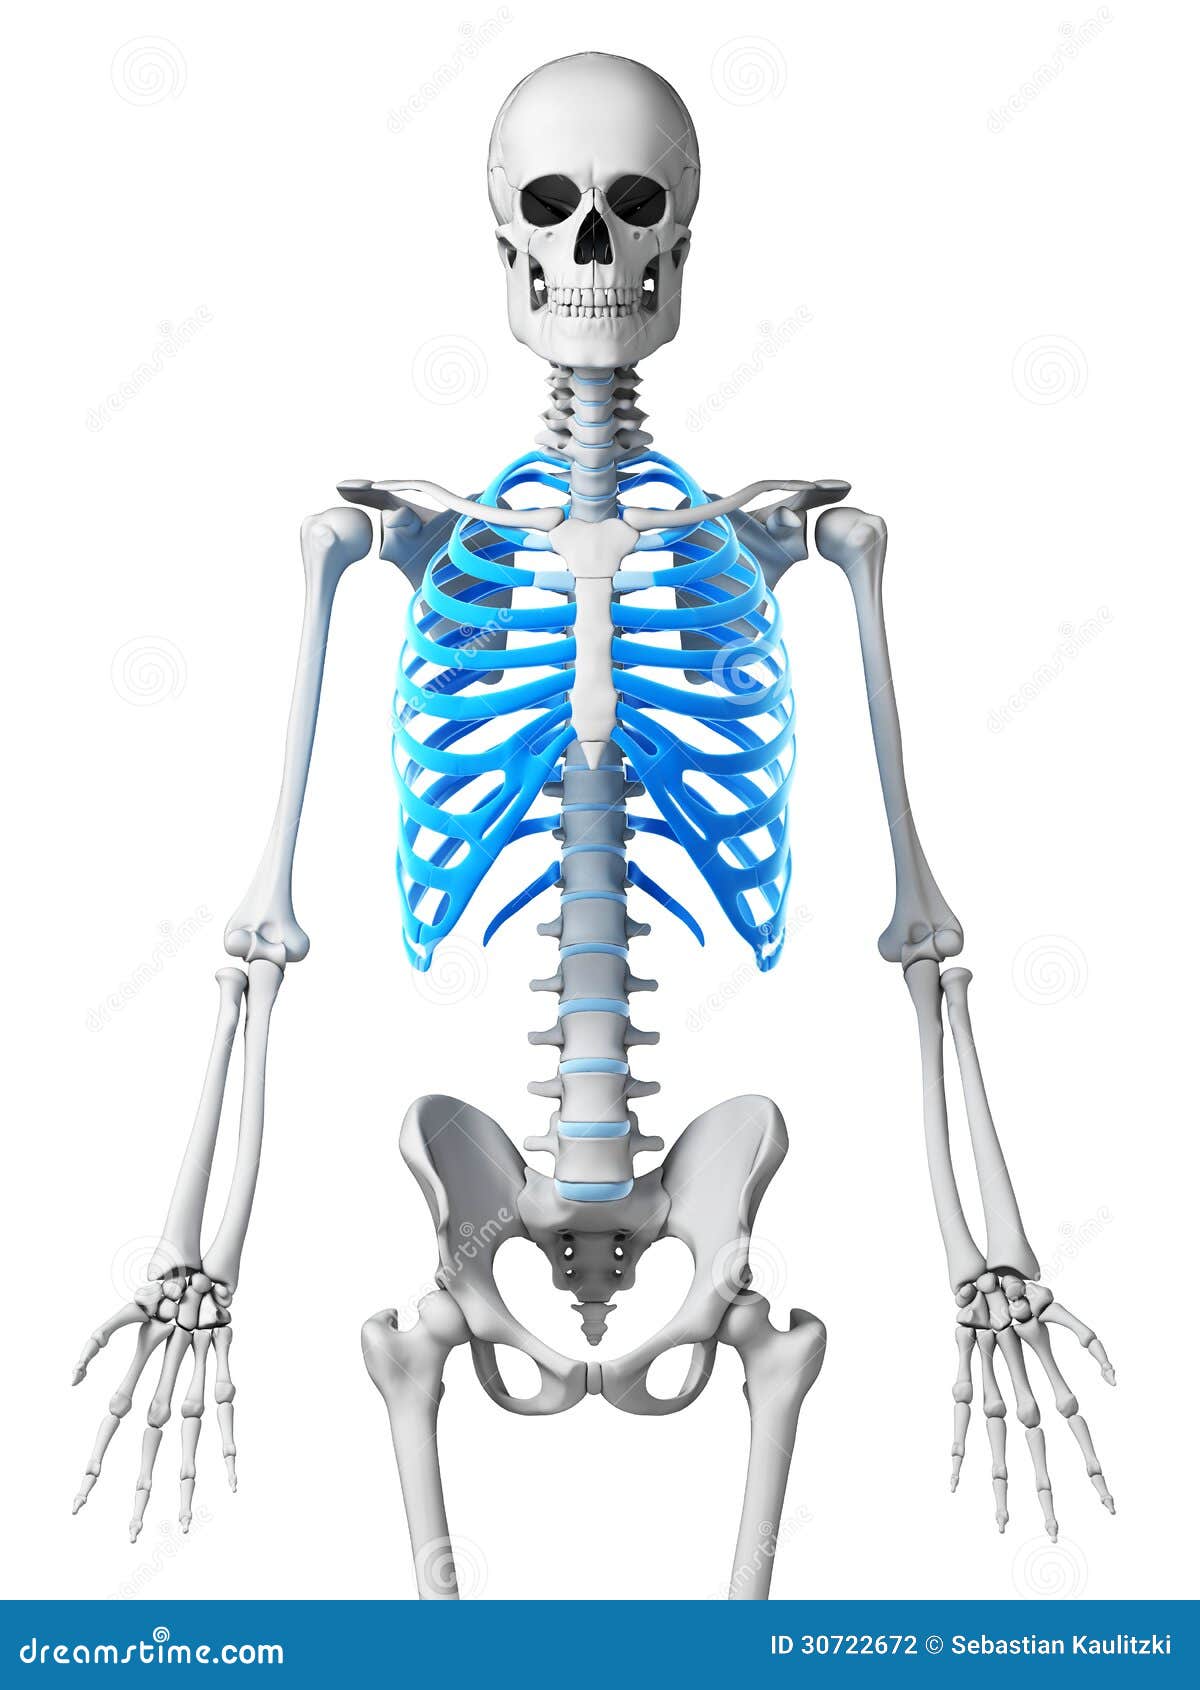 skeletal thorax